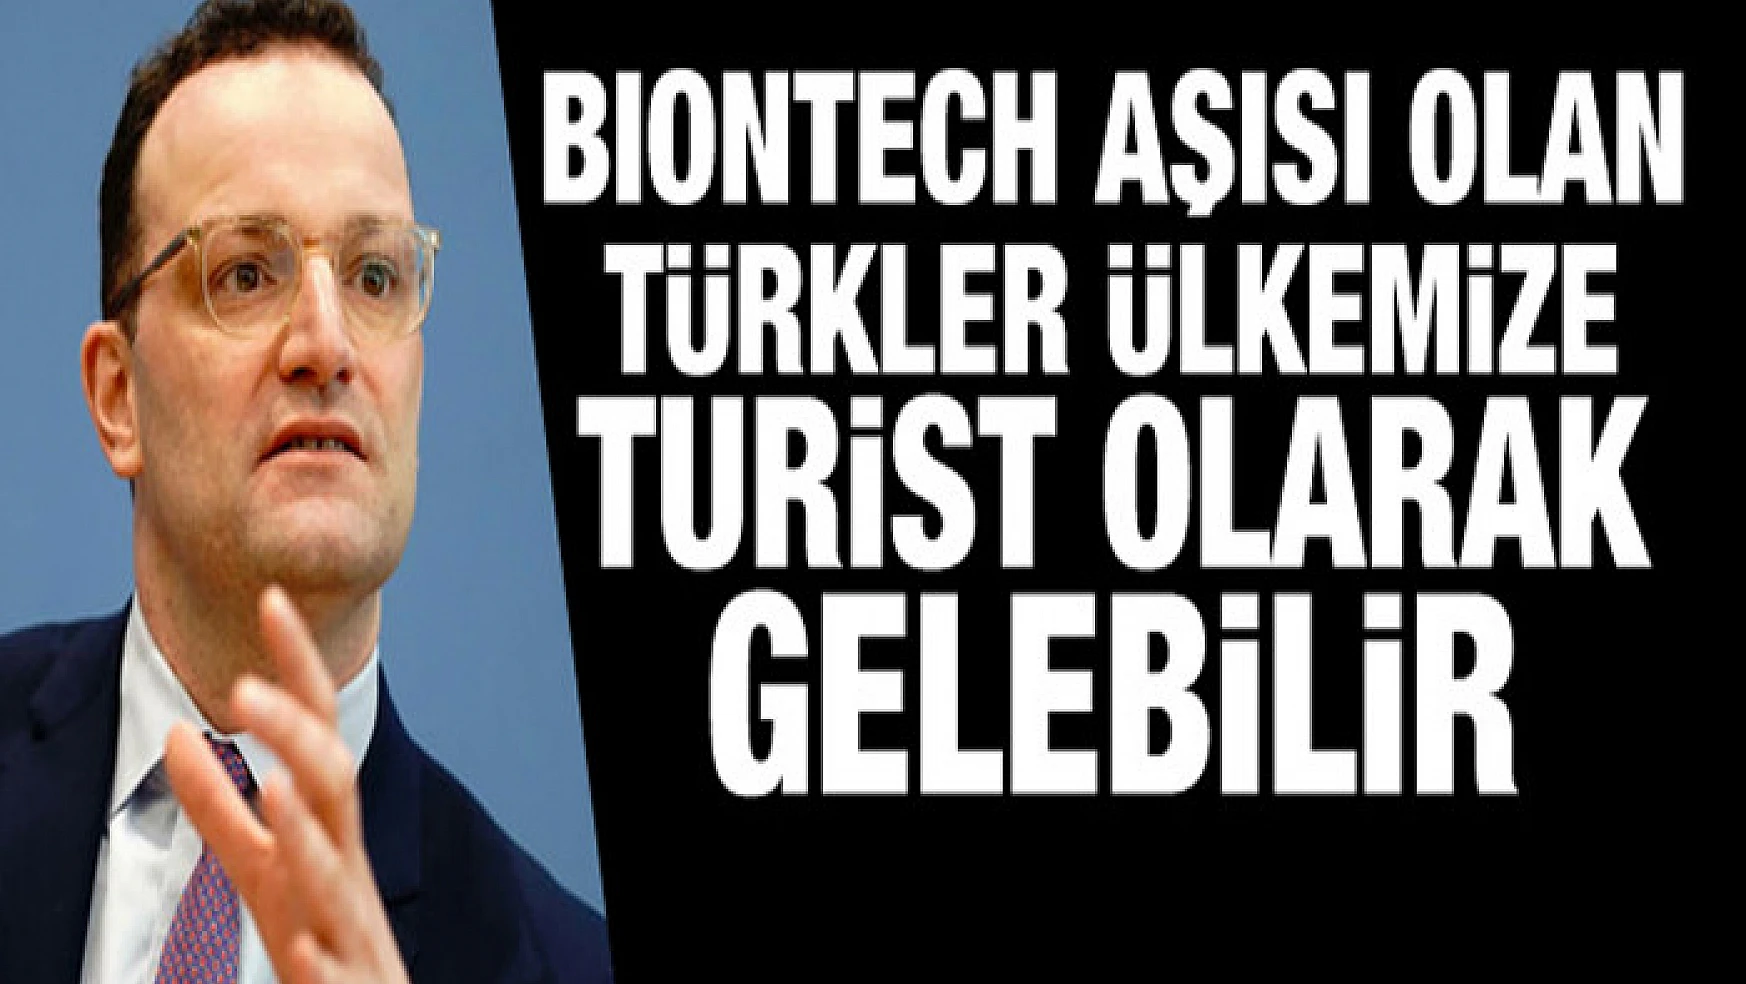 BioNTech aşısı olan Türkler ülkemize turist olarak gelebilirler